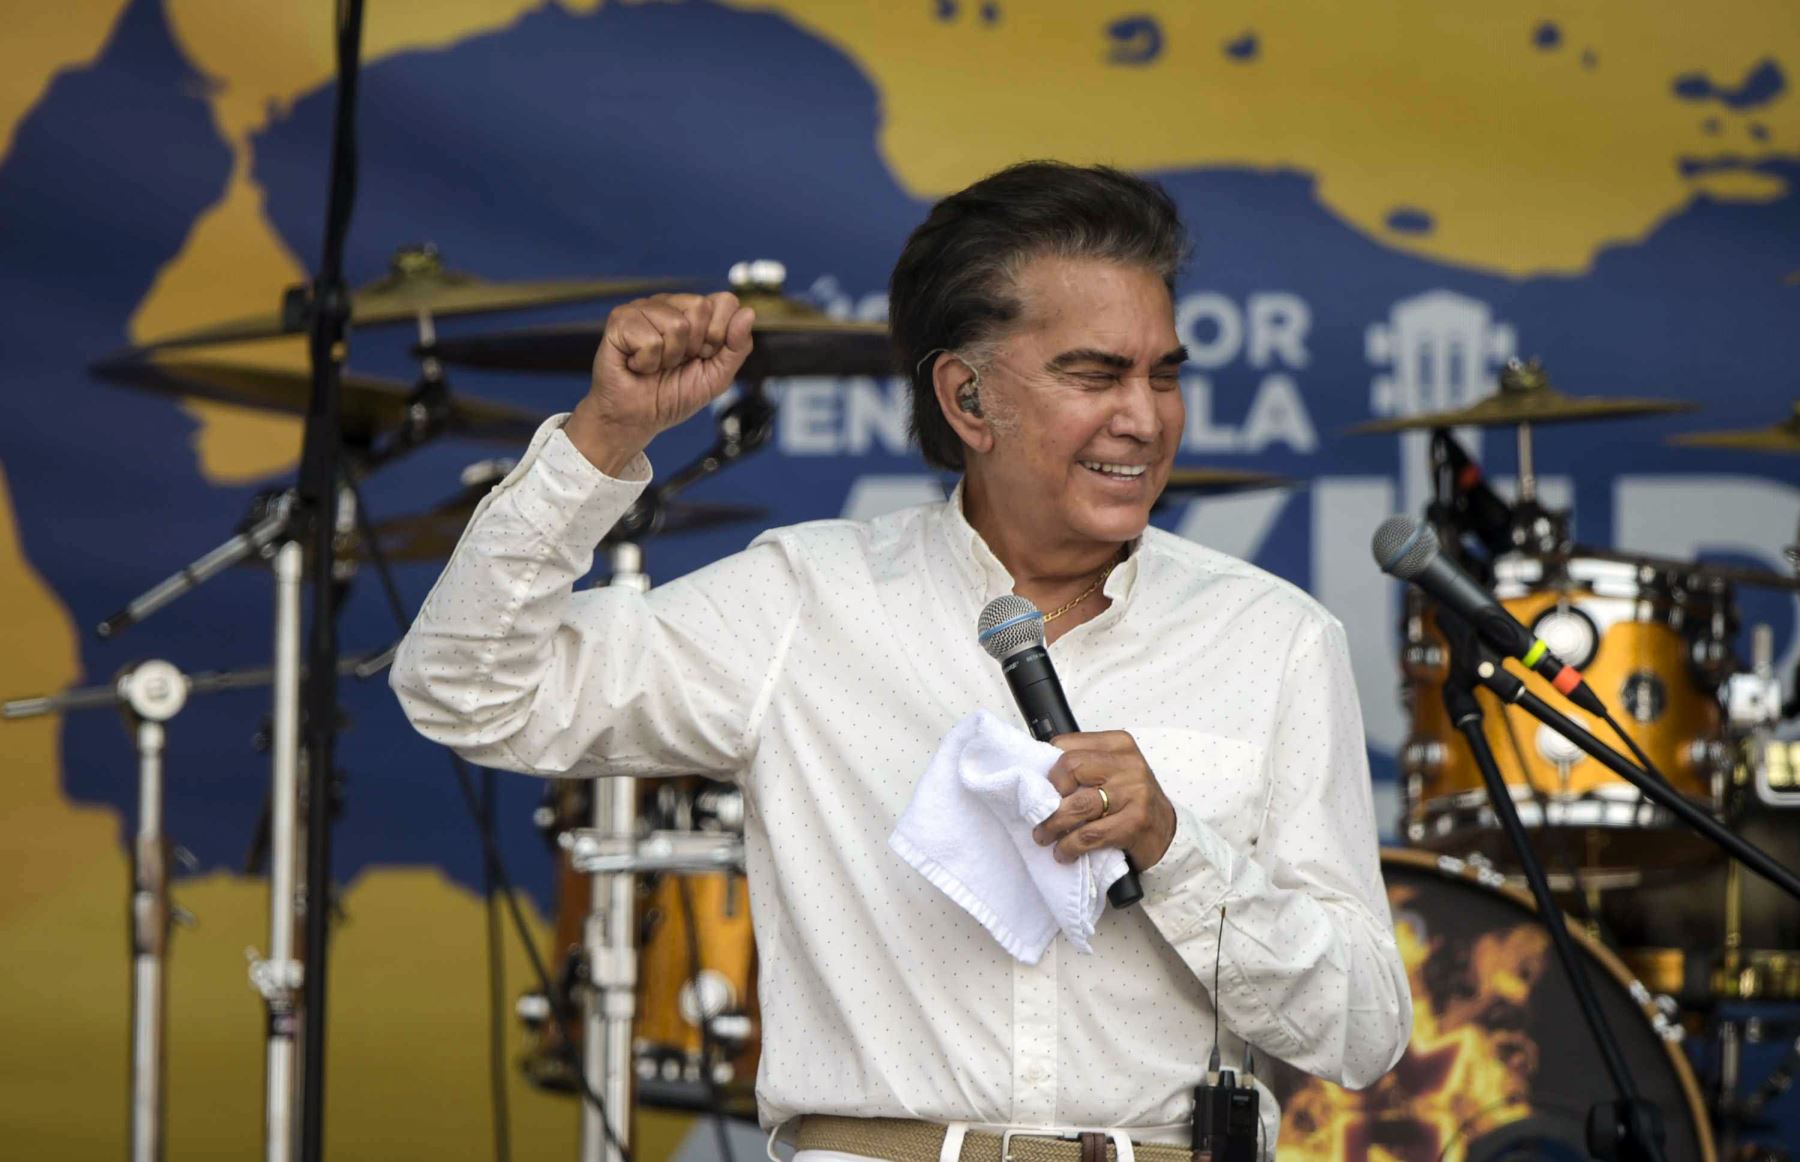 José Luis Rodríguez "El Puma", se presenta durante el concierto "Venezuela Aid Live", organizado para recaudar fondos para el esfuerzo de ayuda de Venezuela en el Puente Internacional Tienditas en Cúcuta, Colombia, el 22 de febrero de 2019. Foto: AFP